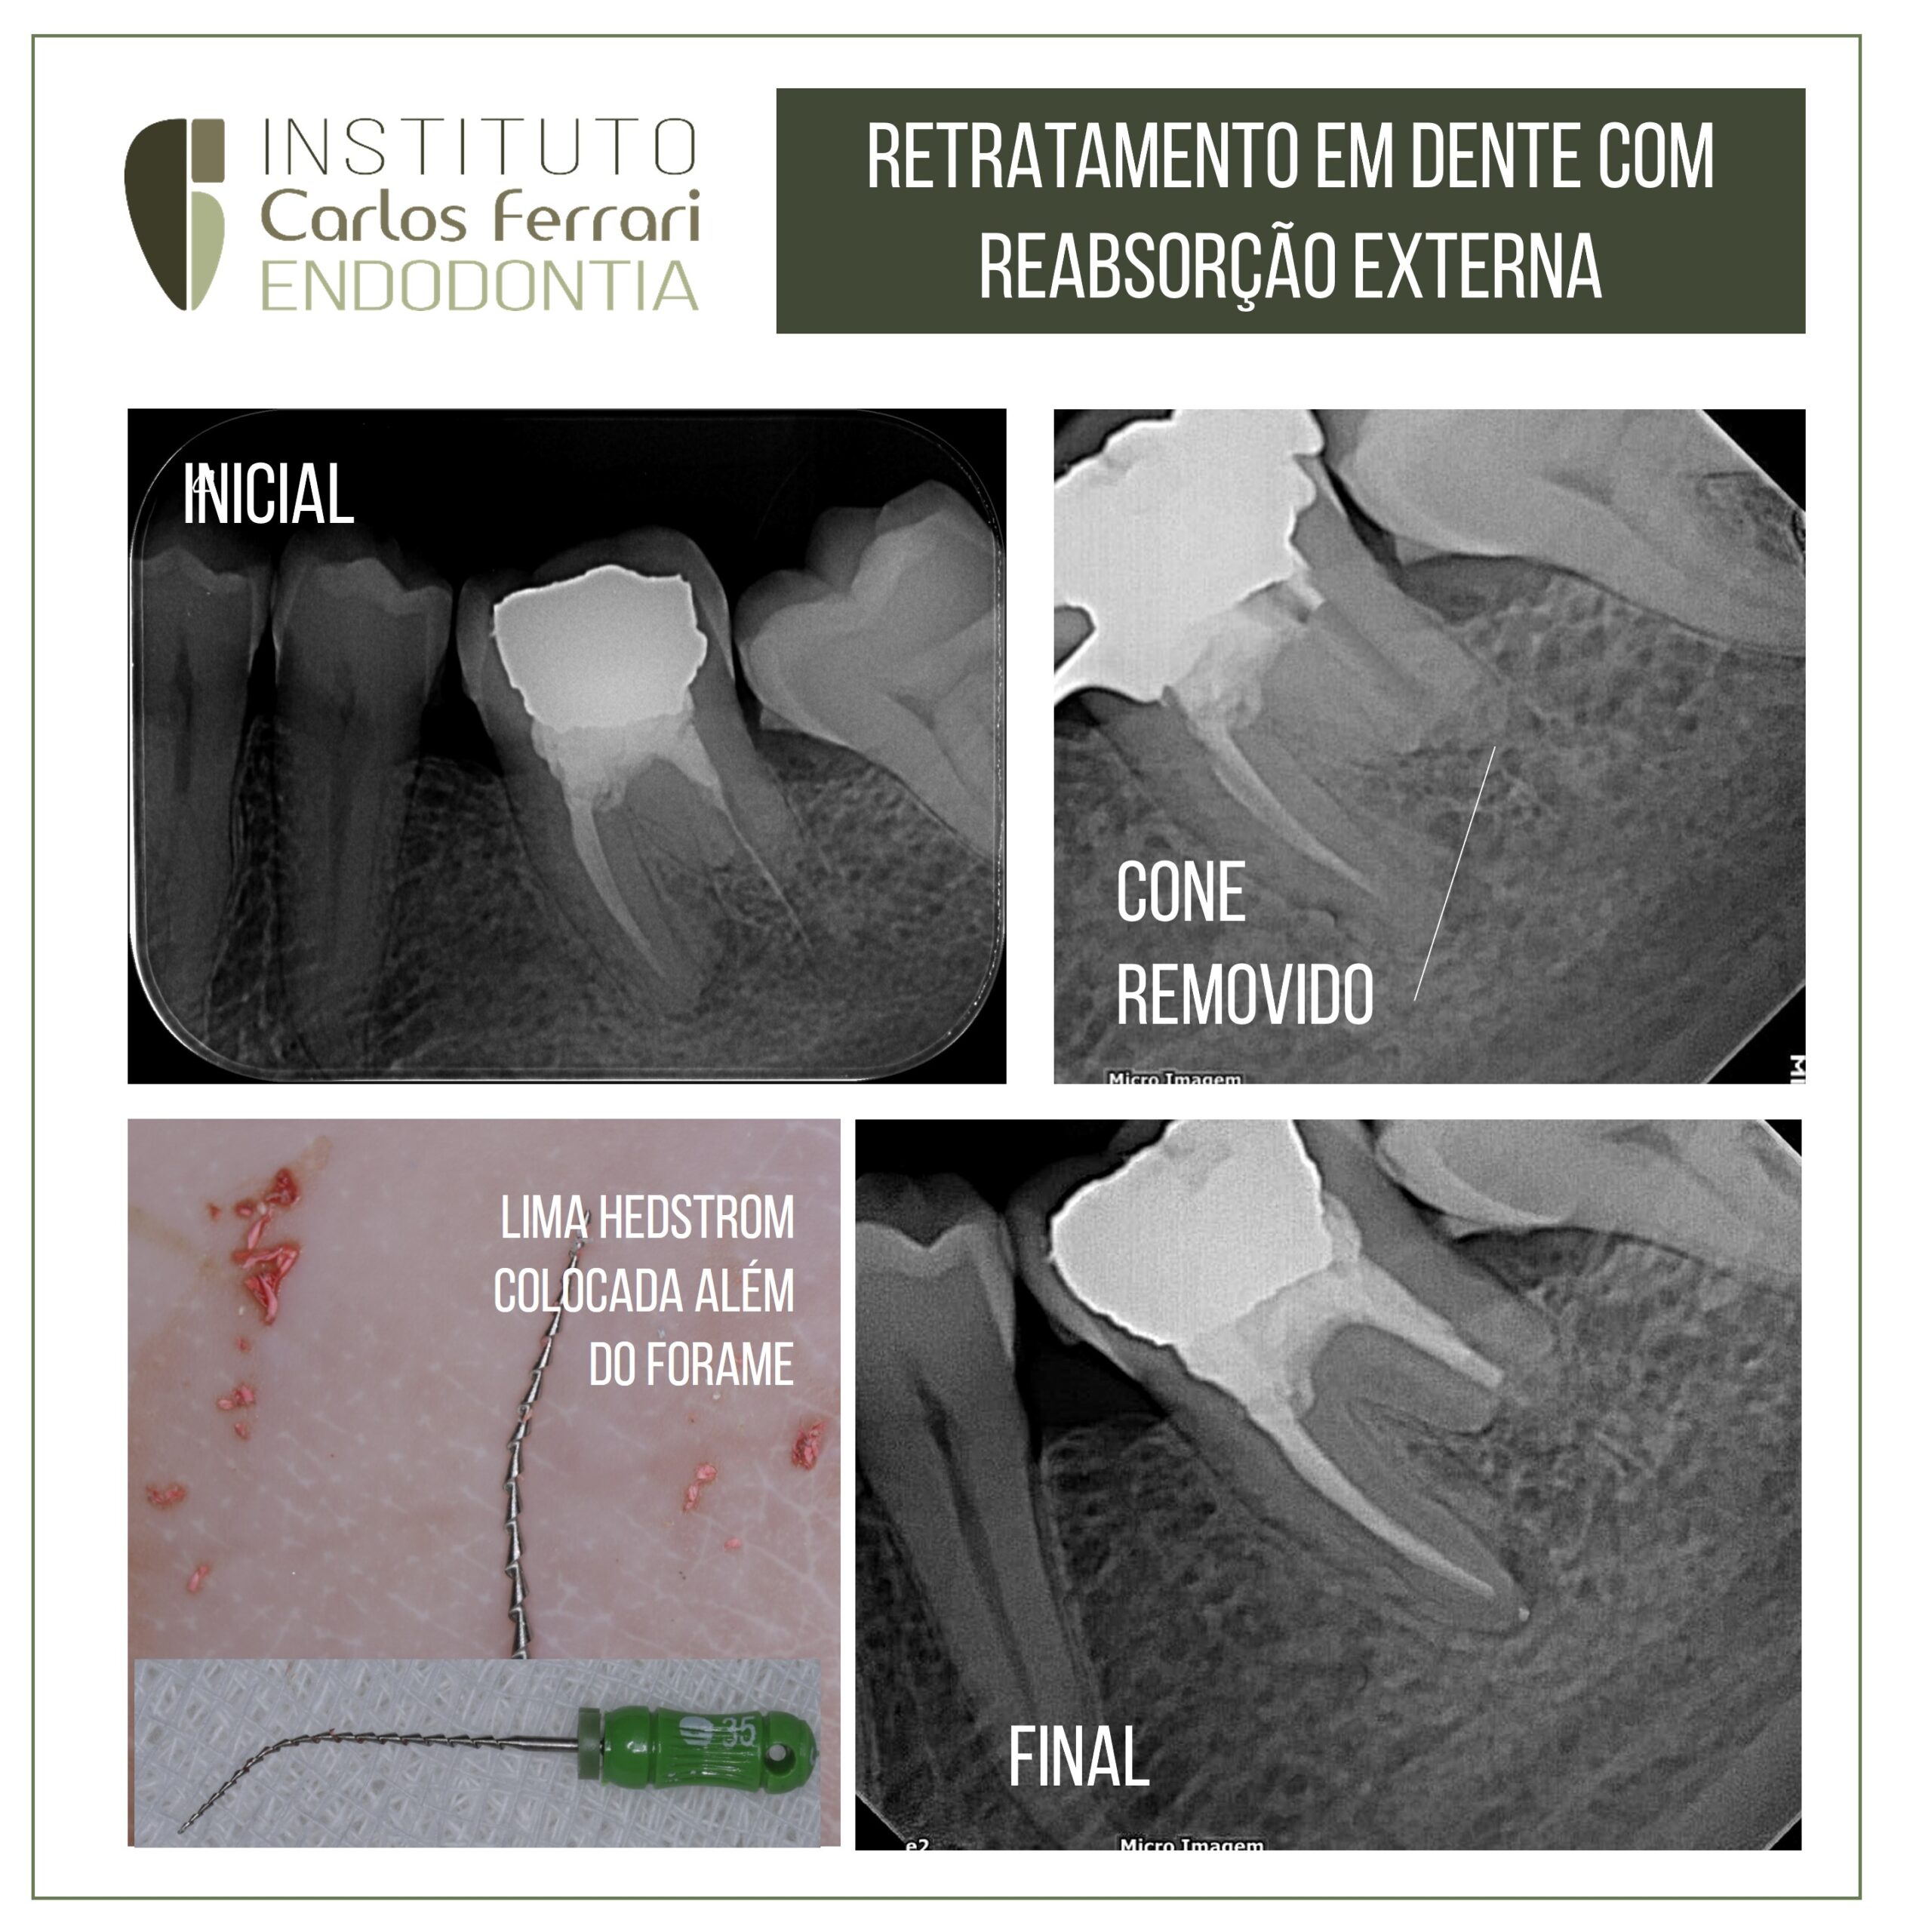 You are currently viewing Retratamento em dente com reabsorção externa.